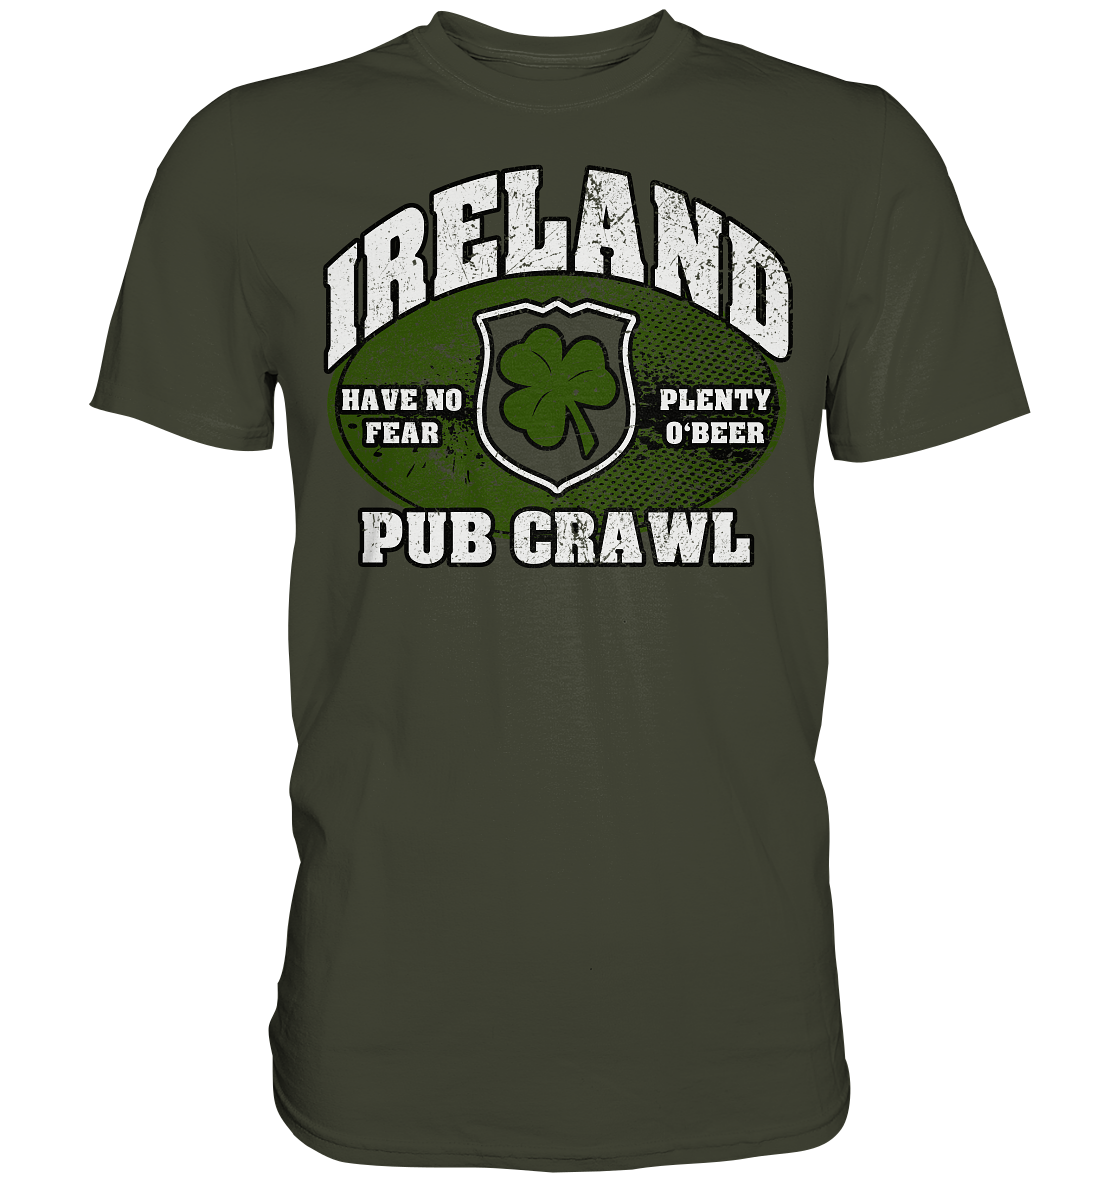 Ireland "Pub Crawl" - Premium Shirt